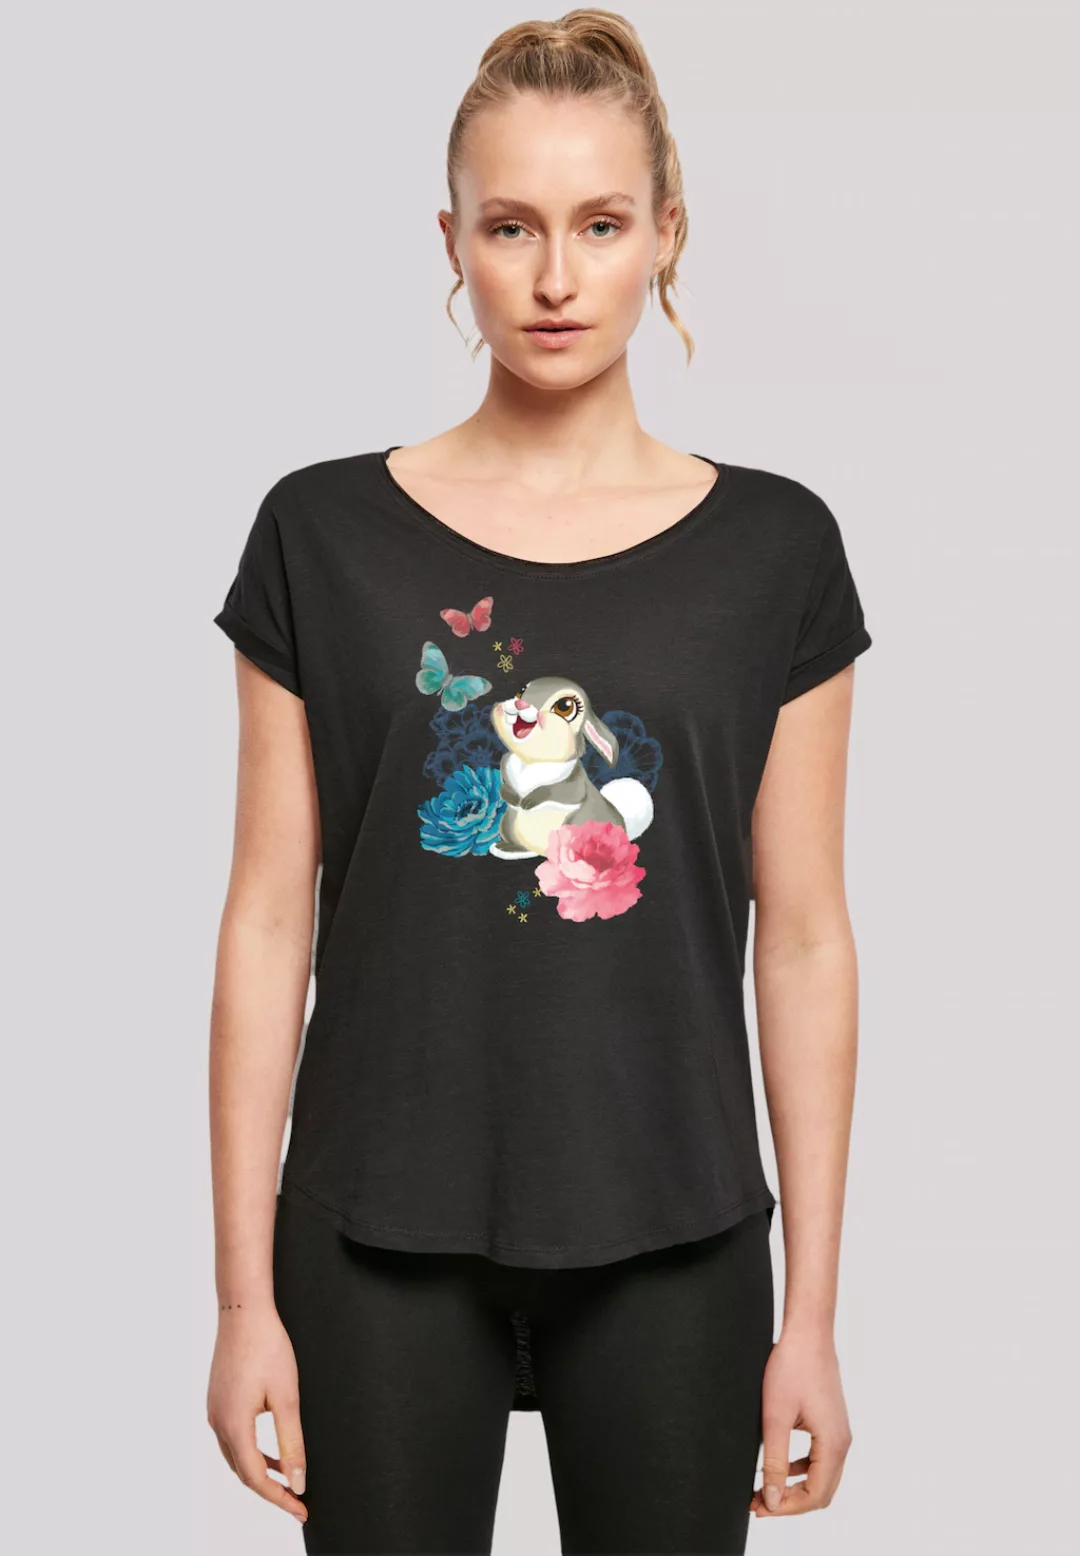 F4NT4STIC T-Shirt "Disney Bambi Thumper", Premium Qualität günstig online kaufen